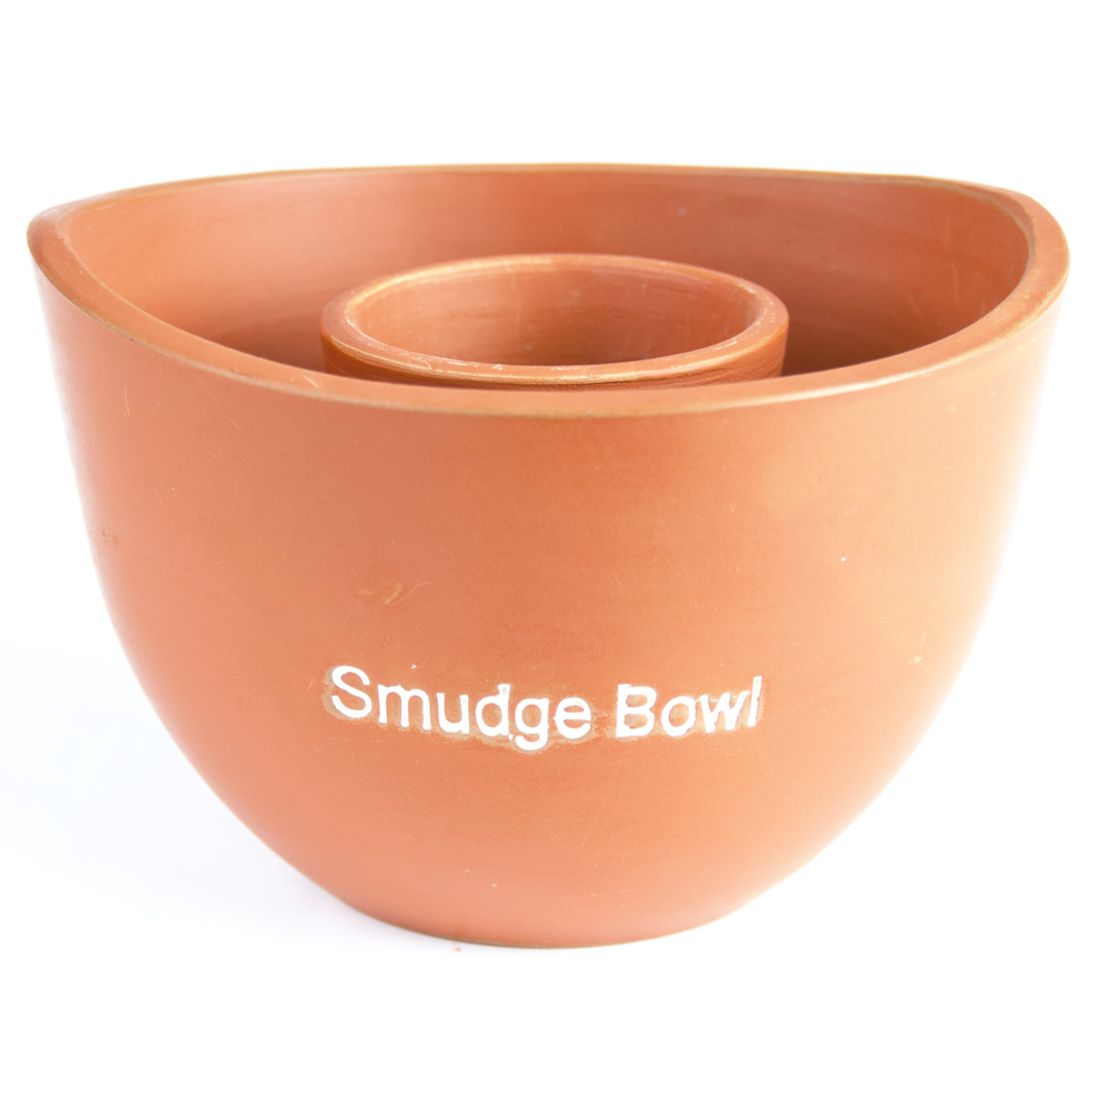 Räucherschale für Smudge Sticks - Smudge Bowl, Terracotta